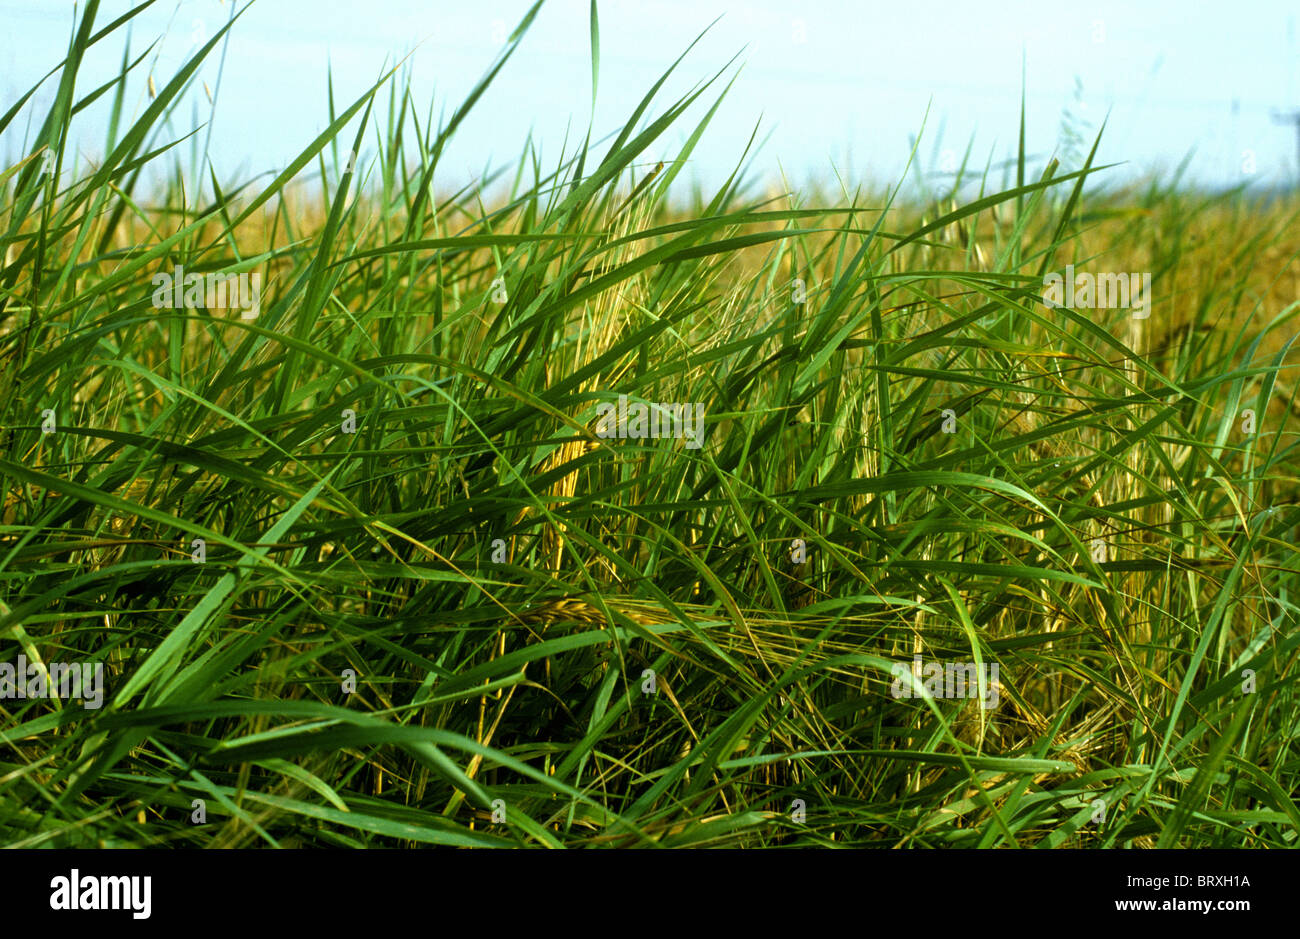 Couch grass (Agropyron repens) plaga en un cultivo de cebada madura Foto de stock